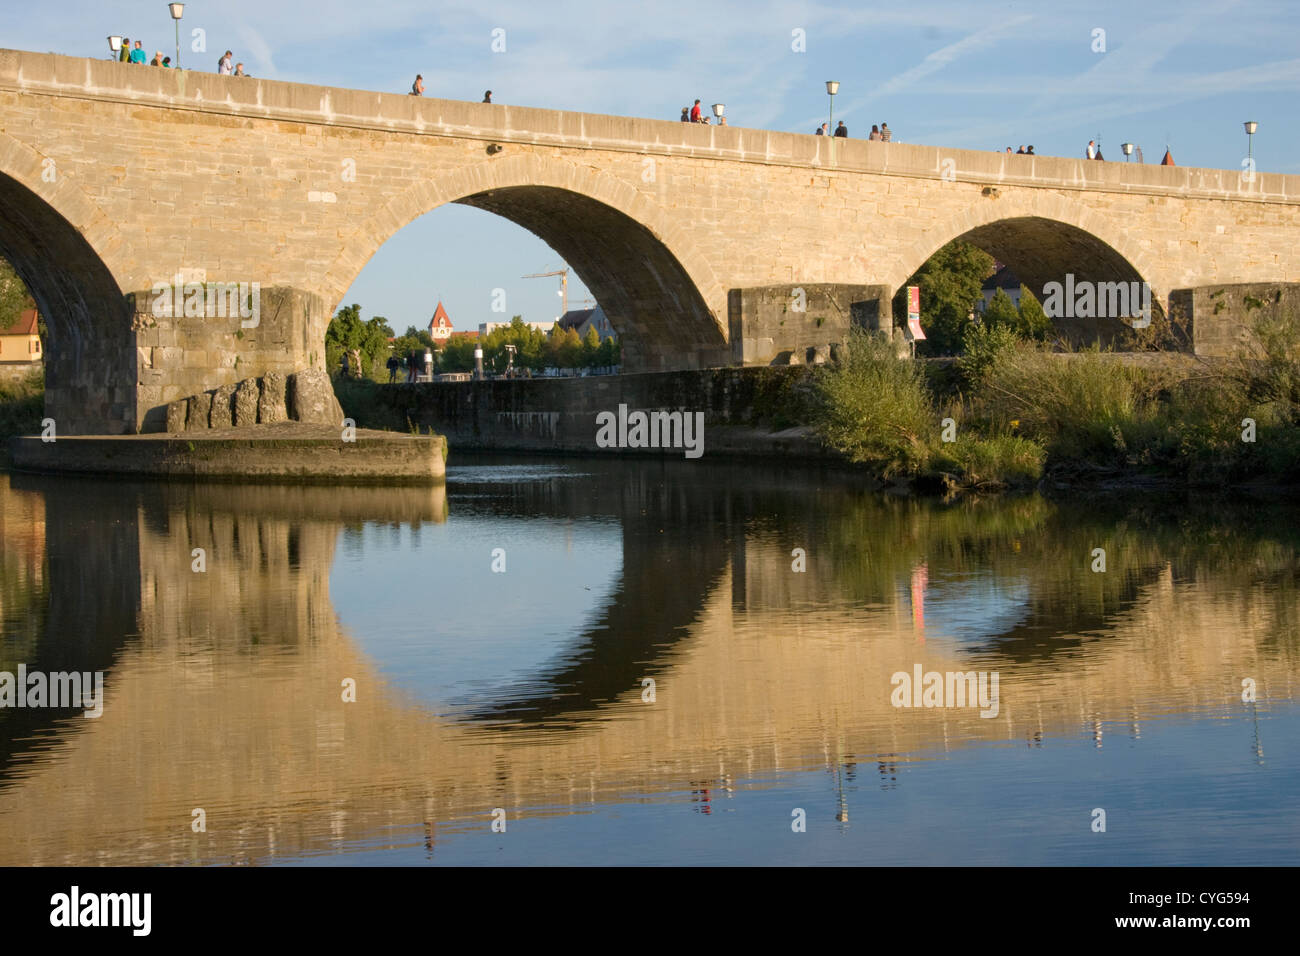 El siglo xii Steinere Brücke (Puente de Piedra) se refleja en el río Danubio en Ratisbona, Baviera, Alemania Foto de stock